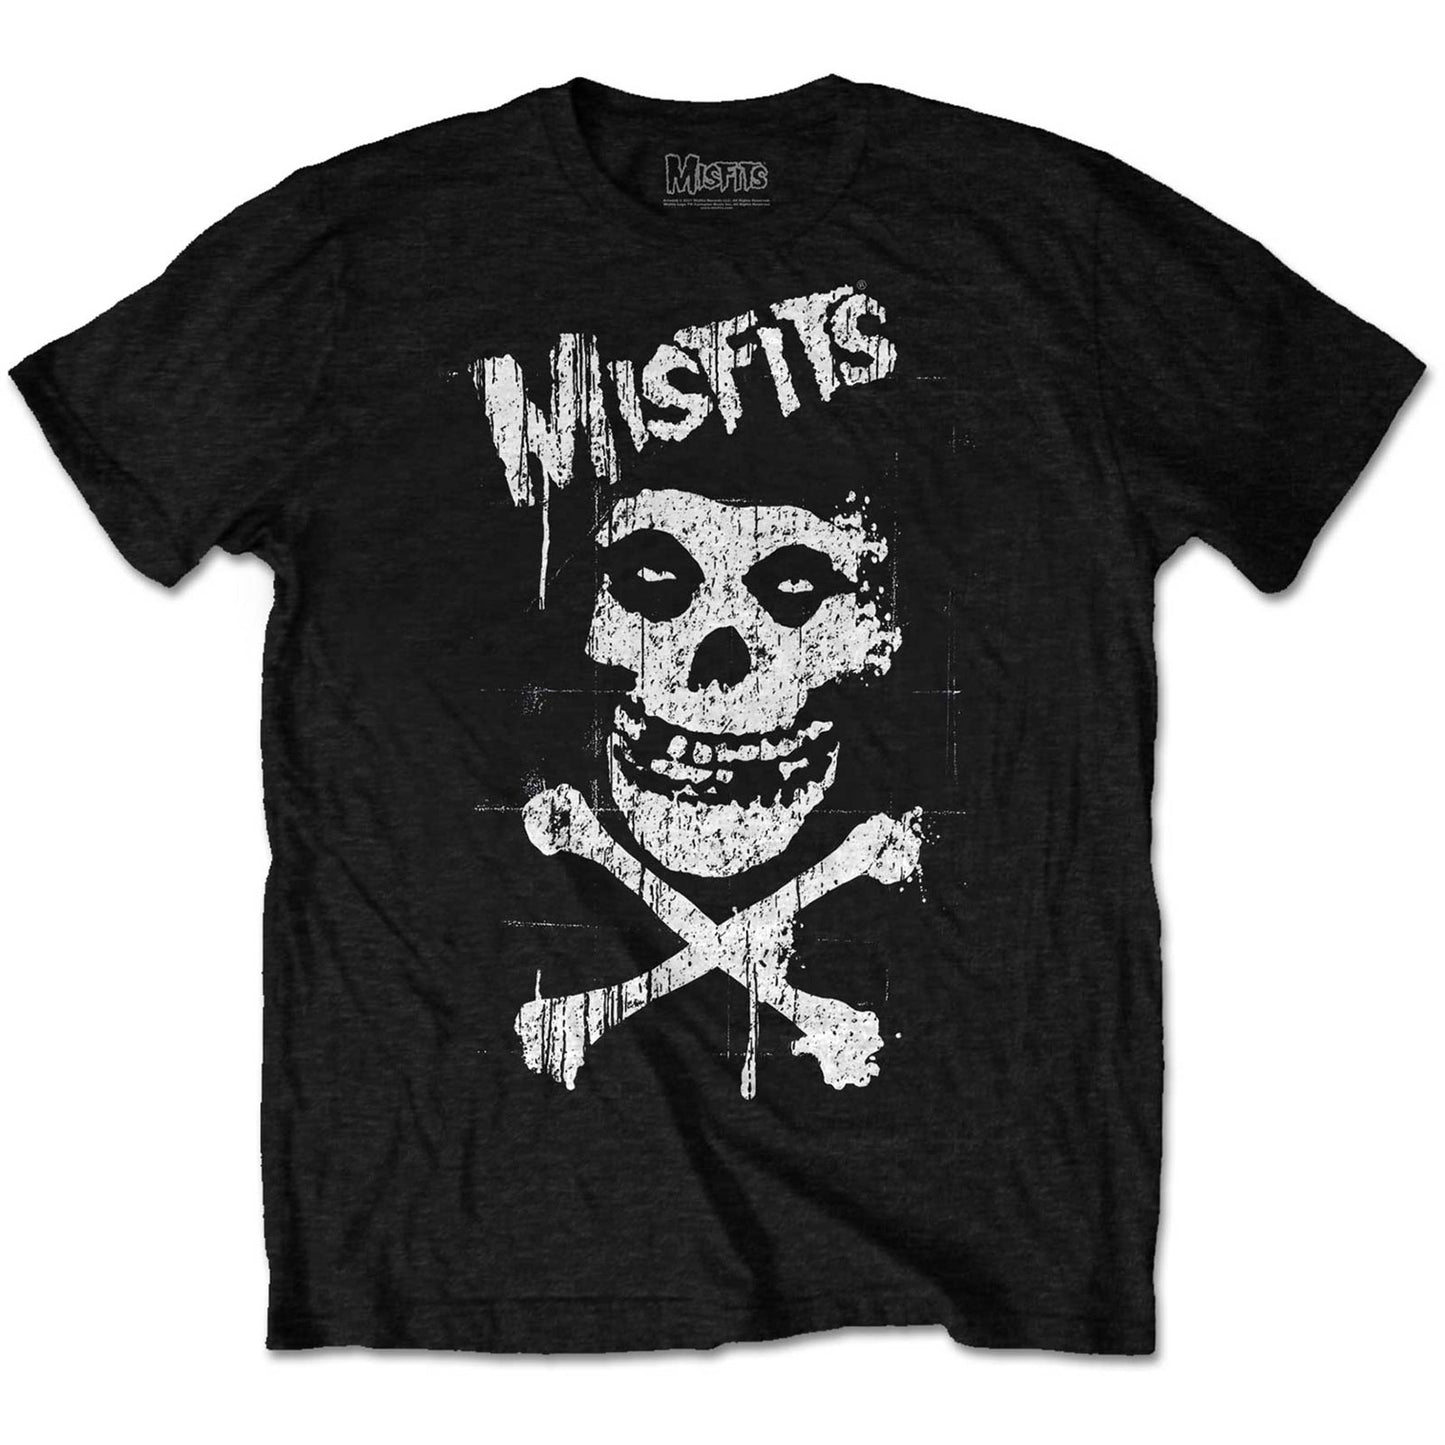 Misfits T-Shirt: Cross Bones